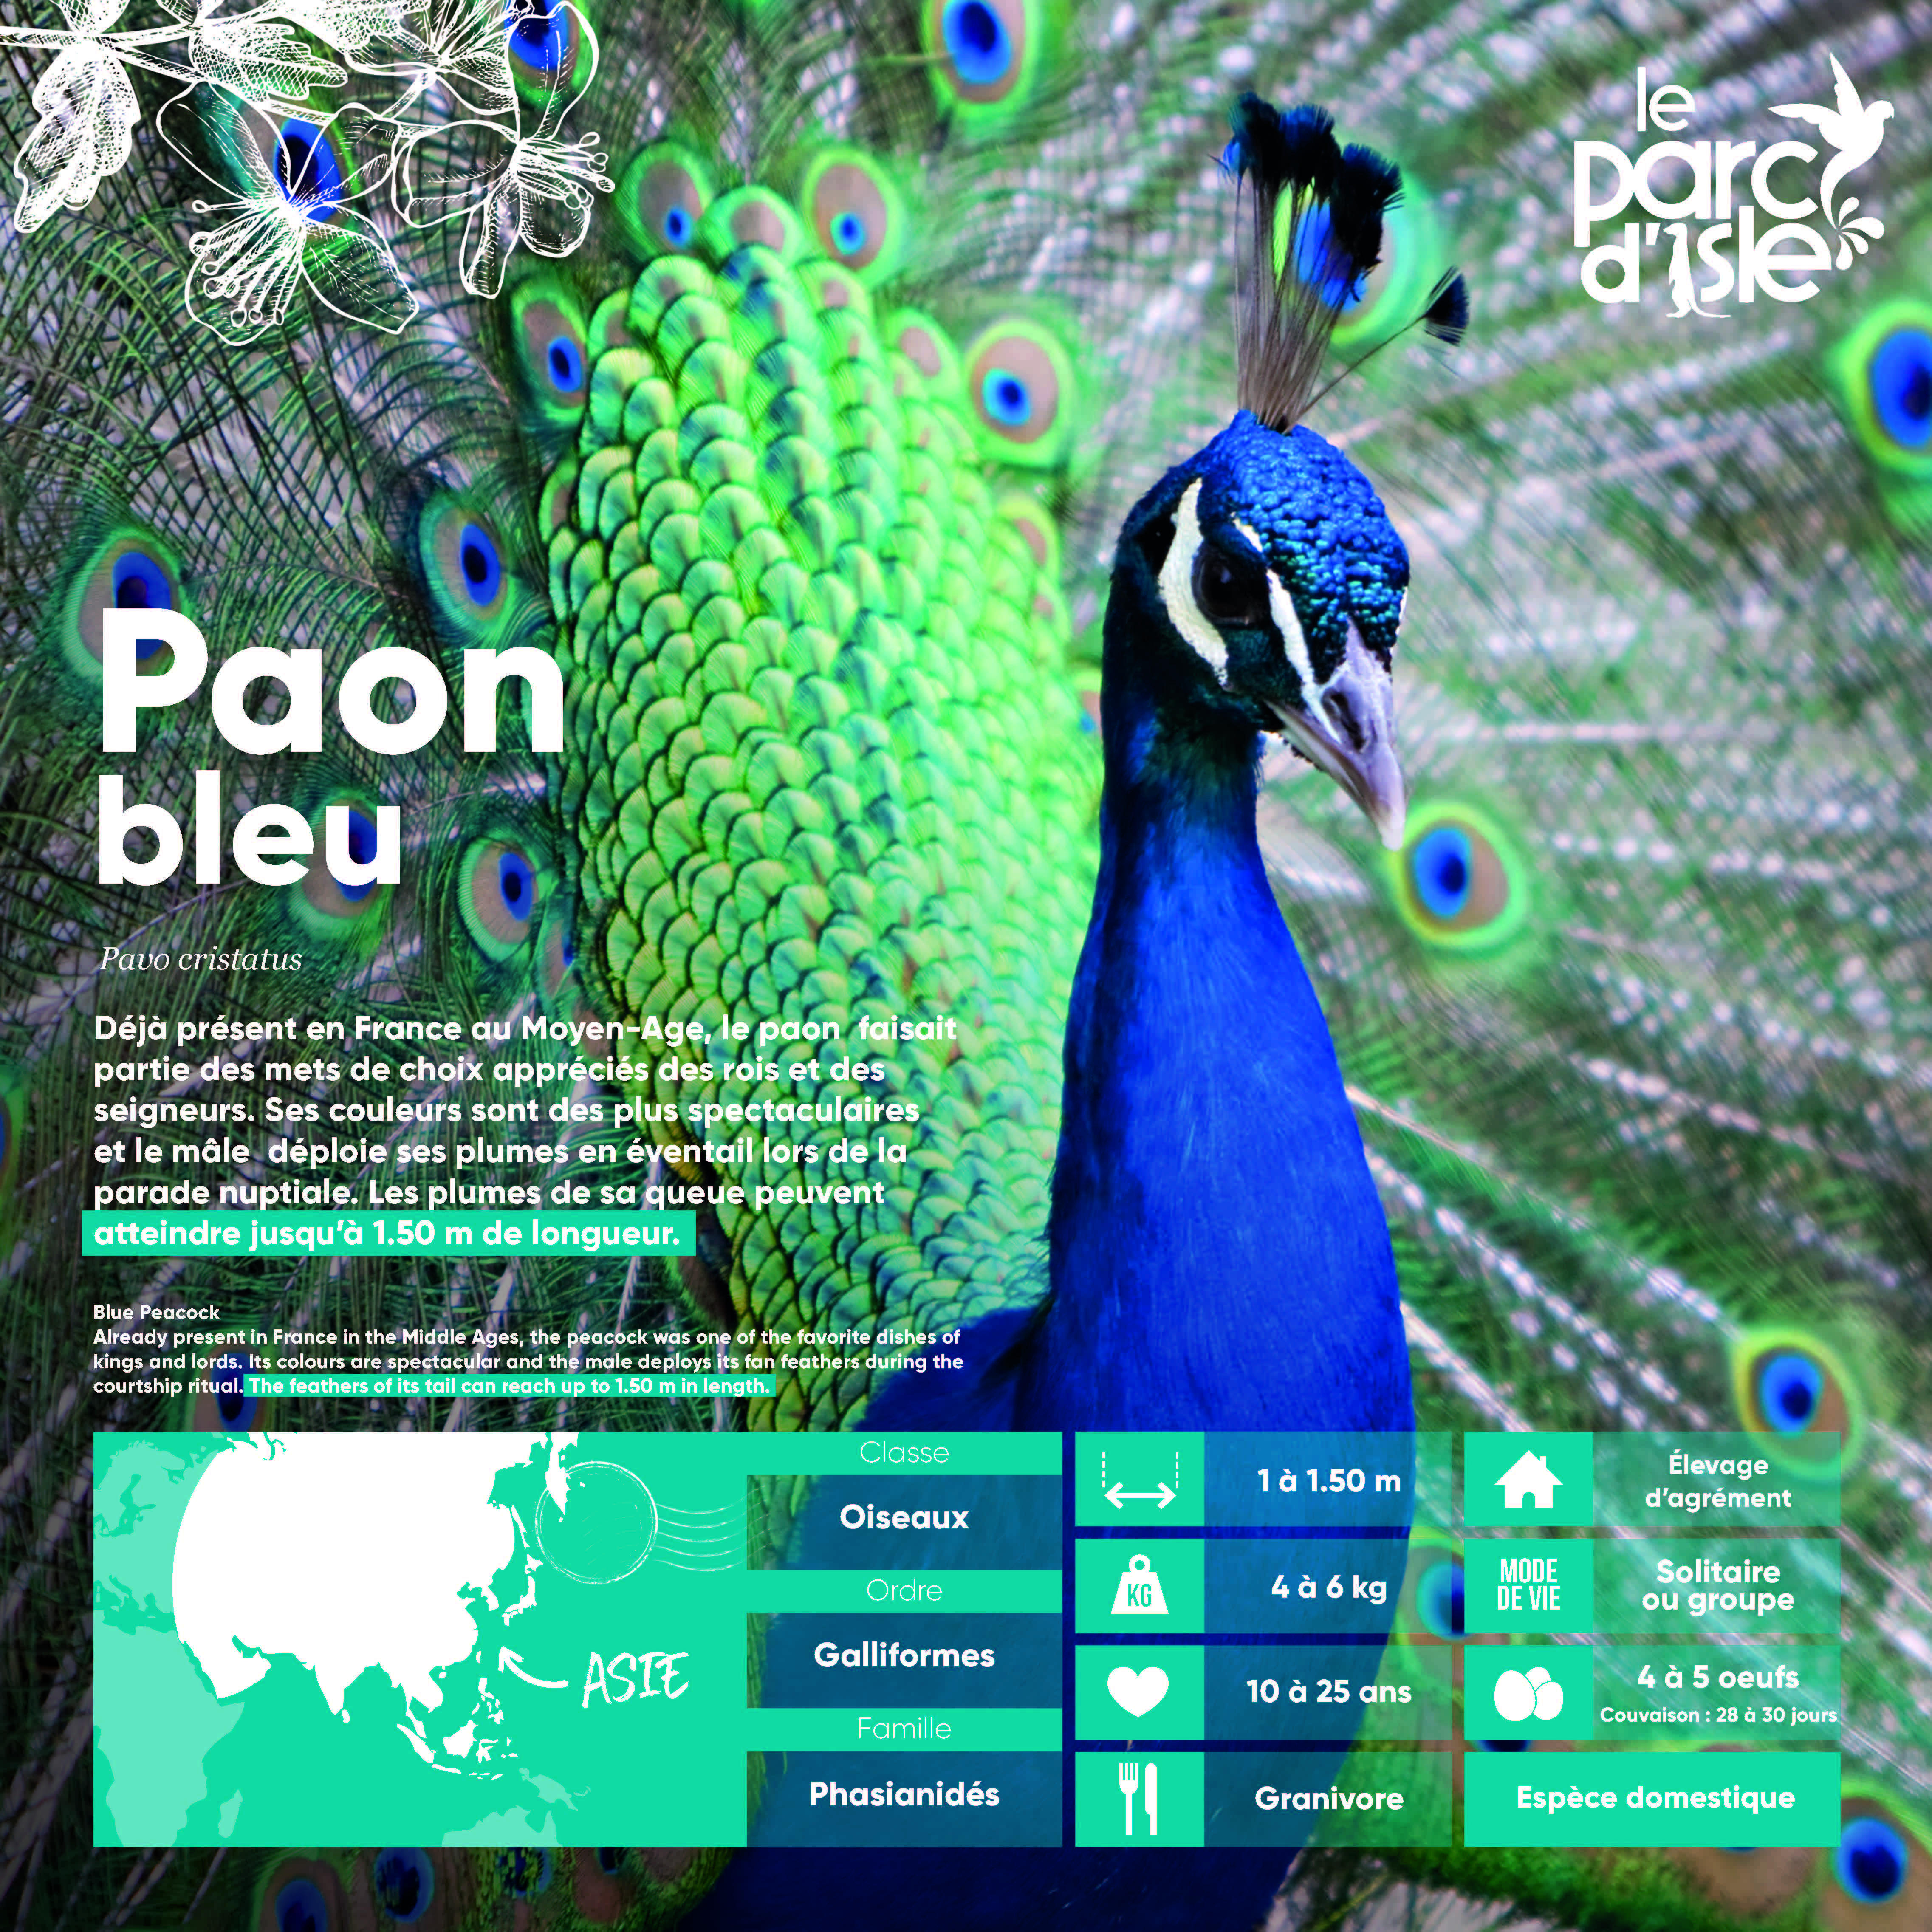 Paon bleu - Agrandir l'image, .JPG 1,74Mo (fenêtre modale)